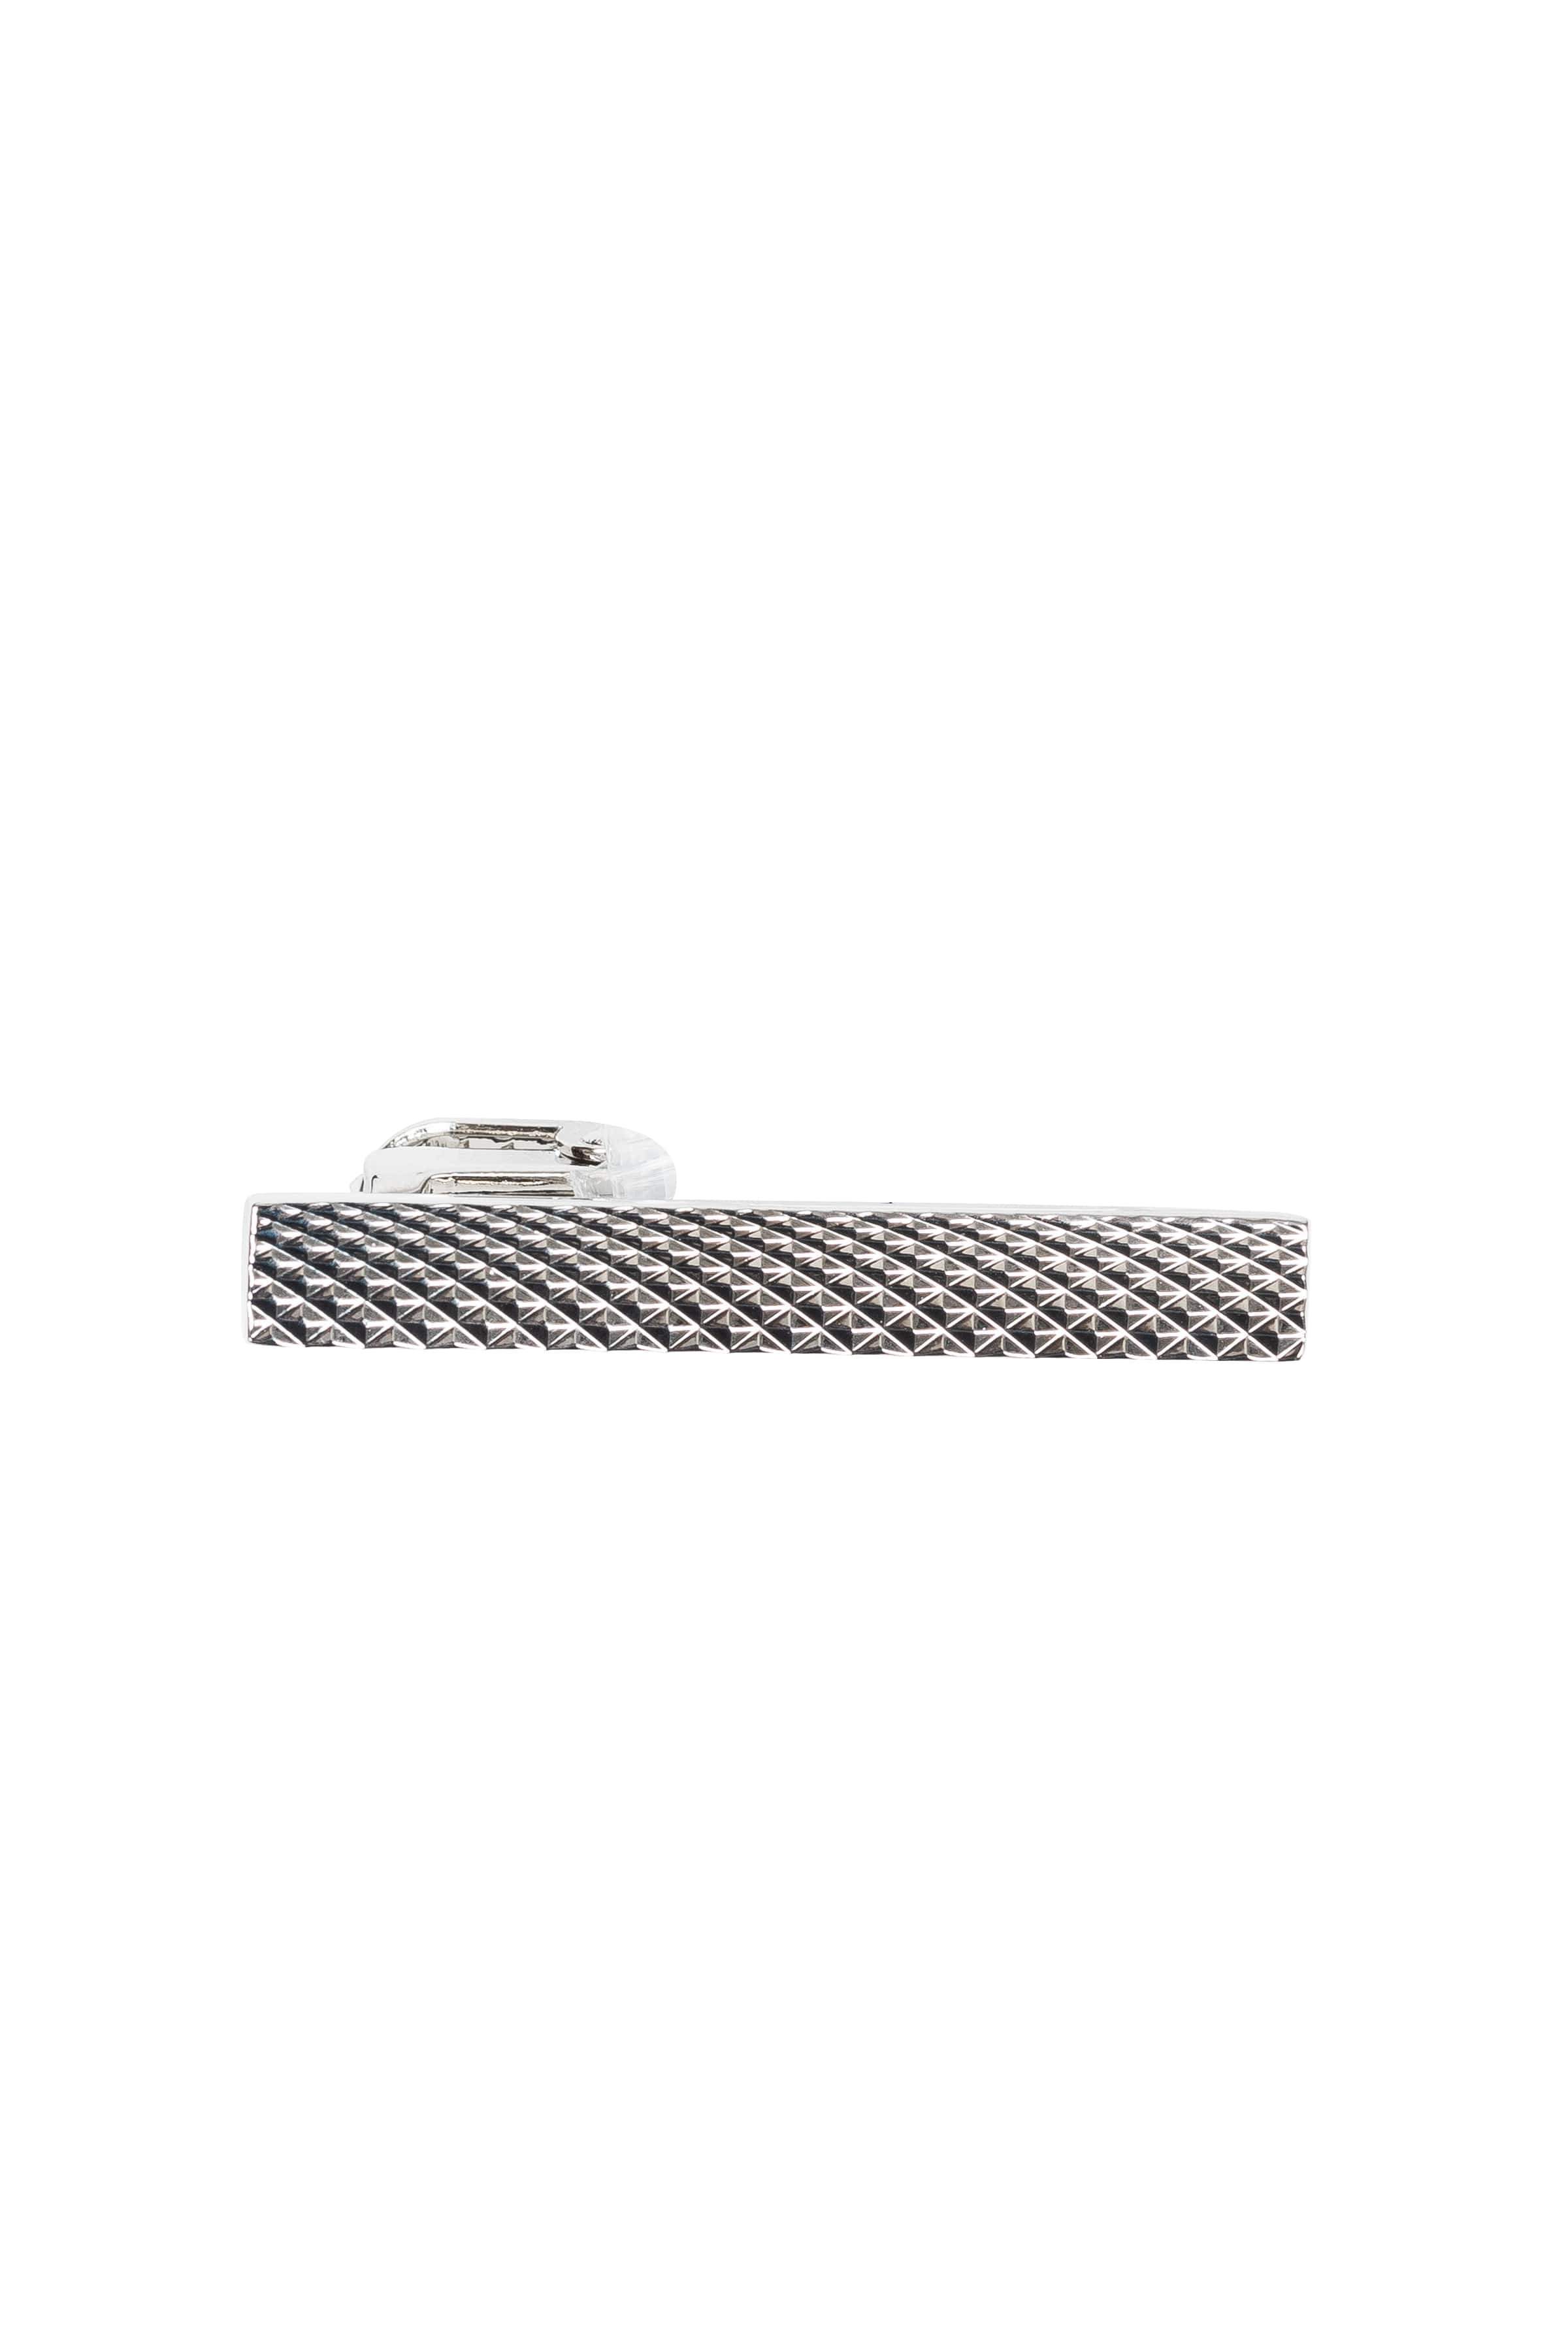 An ivy Slipsenål Patterned Silver Bar 3,5 cm